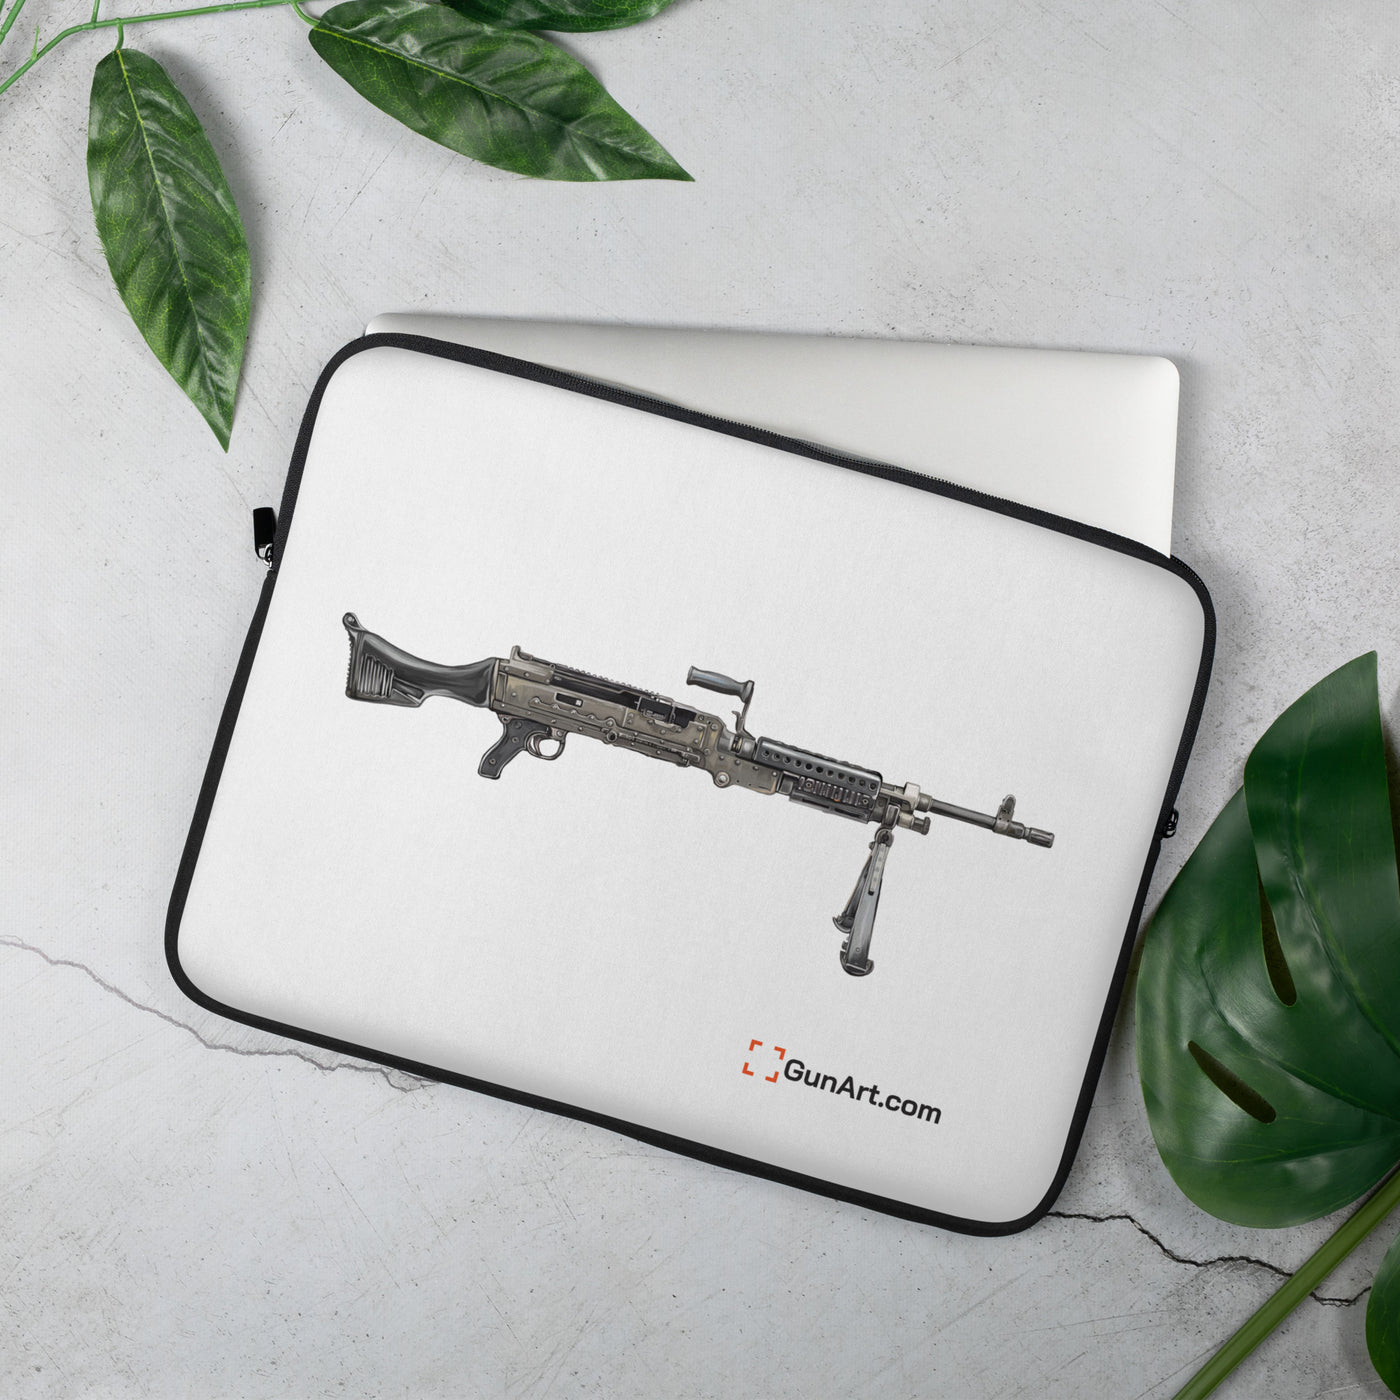 M240B - Belt Fed 7.62x51 Machine Gun Laptop Sleeve - Just The Piece - White Background